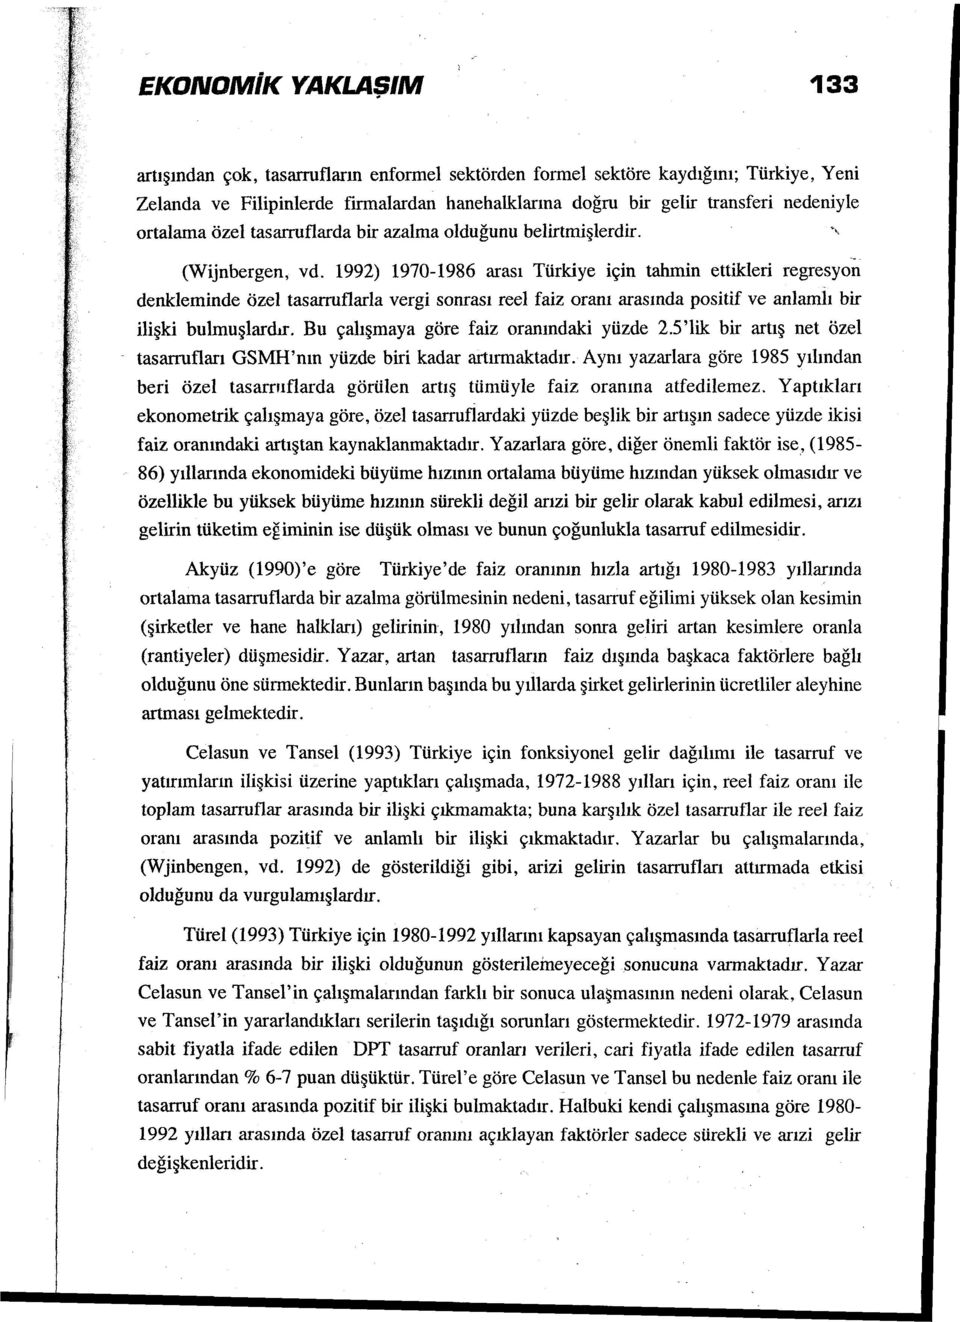 1992) 1970-1986 arası Türkiye için tahmin ettikleri regresyon denkleminde özel tasarruftarla vergi sonrası reel faiz oranı arasında positif ve anlamlı bir ilişki bulmuşlardır.